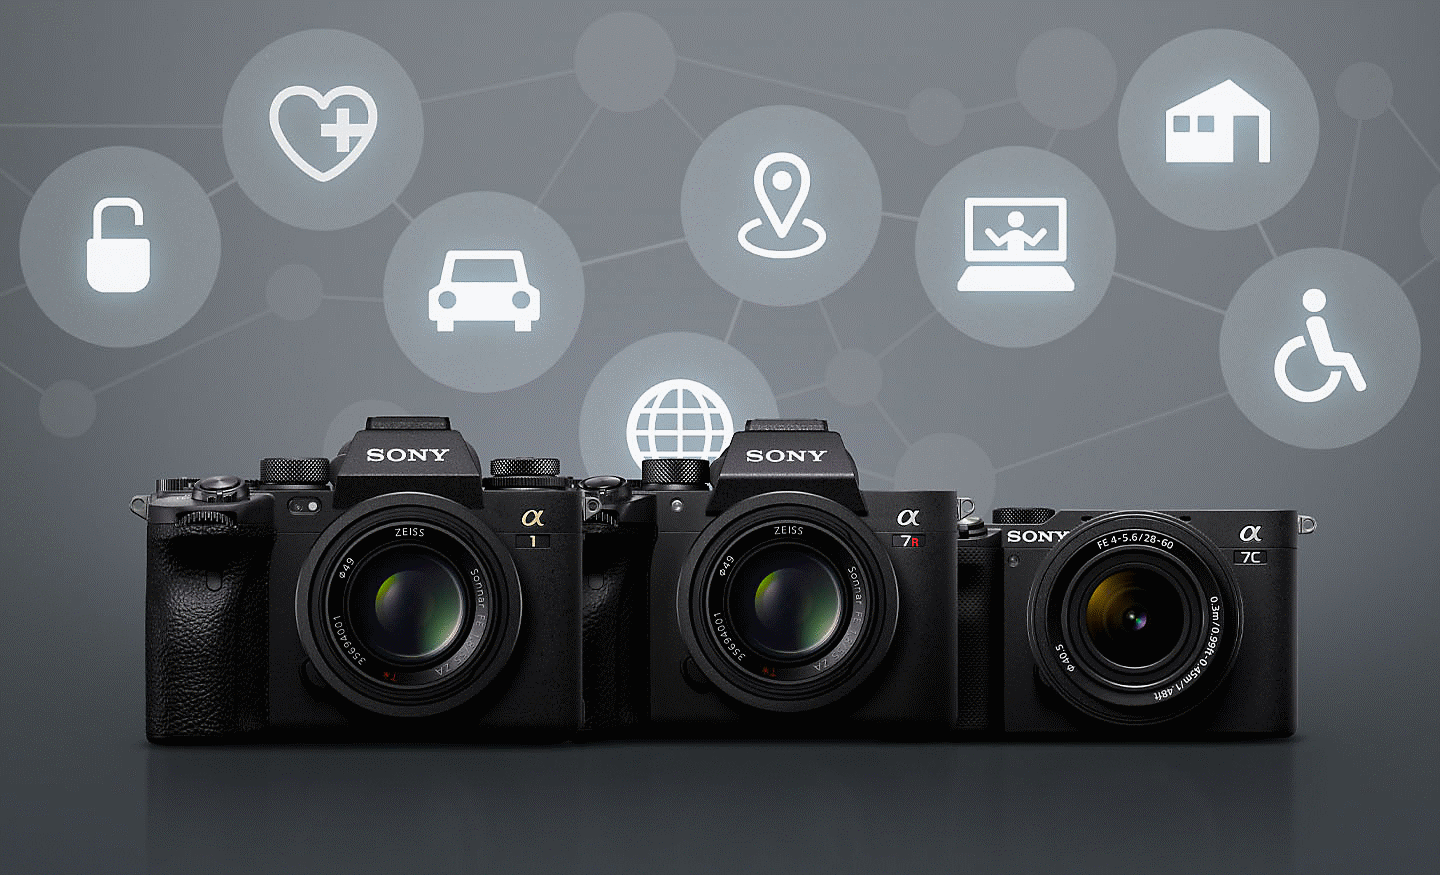 Négy Sony fényképezőgép szürke háttéren, különböző fehér ikonokkal, amelyek a távoli csatlakoztathatóságot szimbolizálják